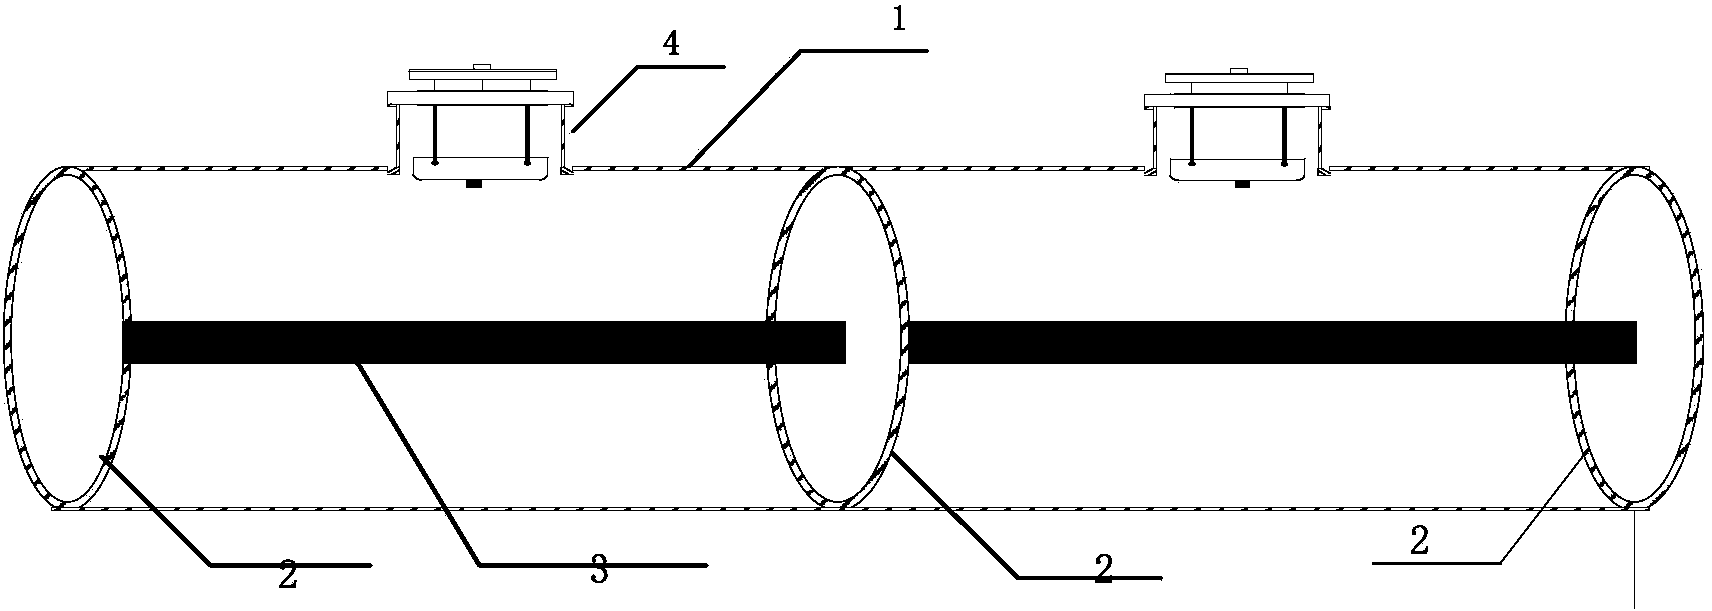 Optical VFTO measurement system based on Pockels effect